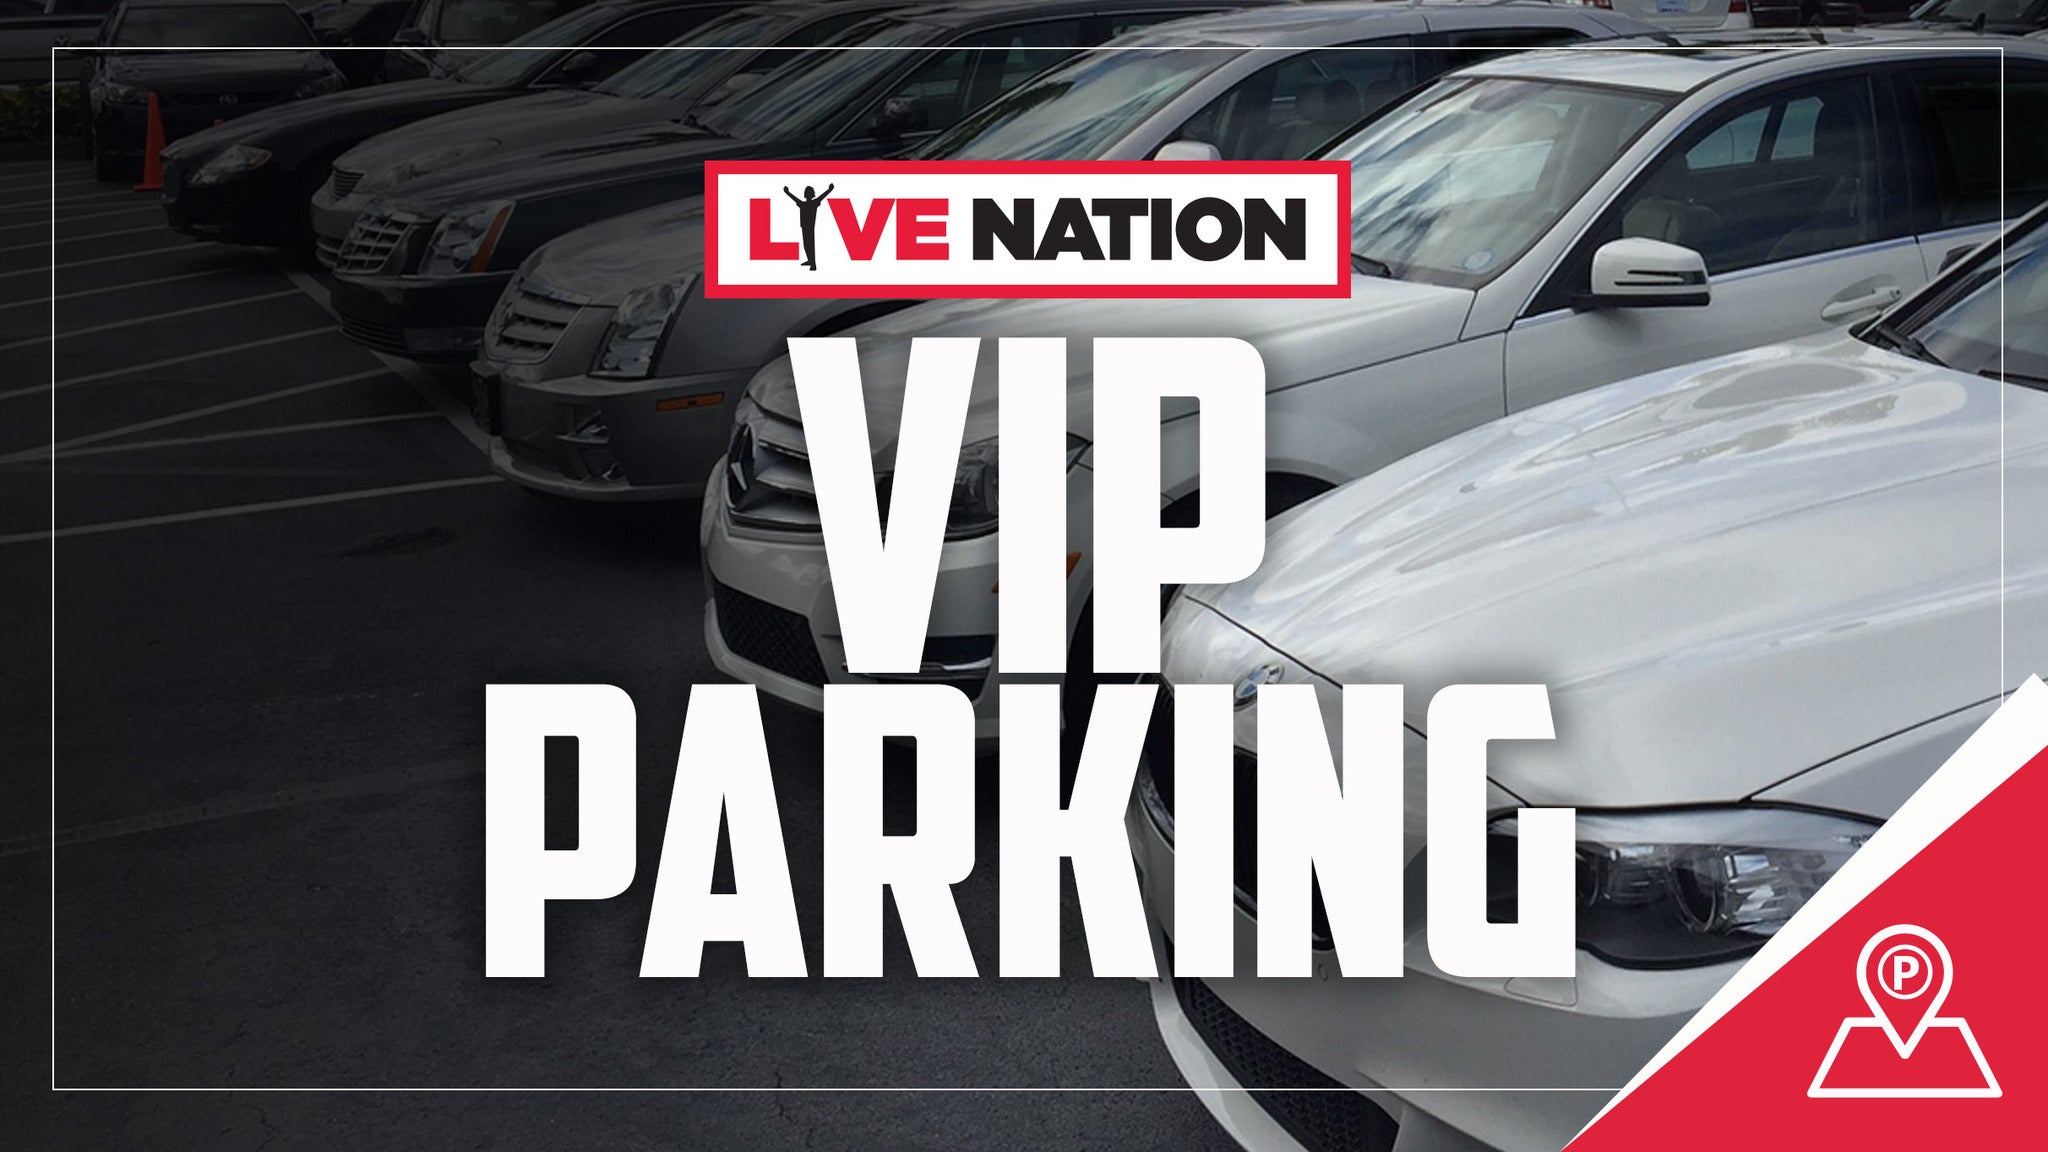 Live Nation VIP Parking presale information on freepresalepasswords.com